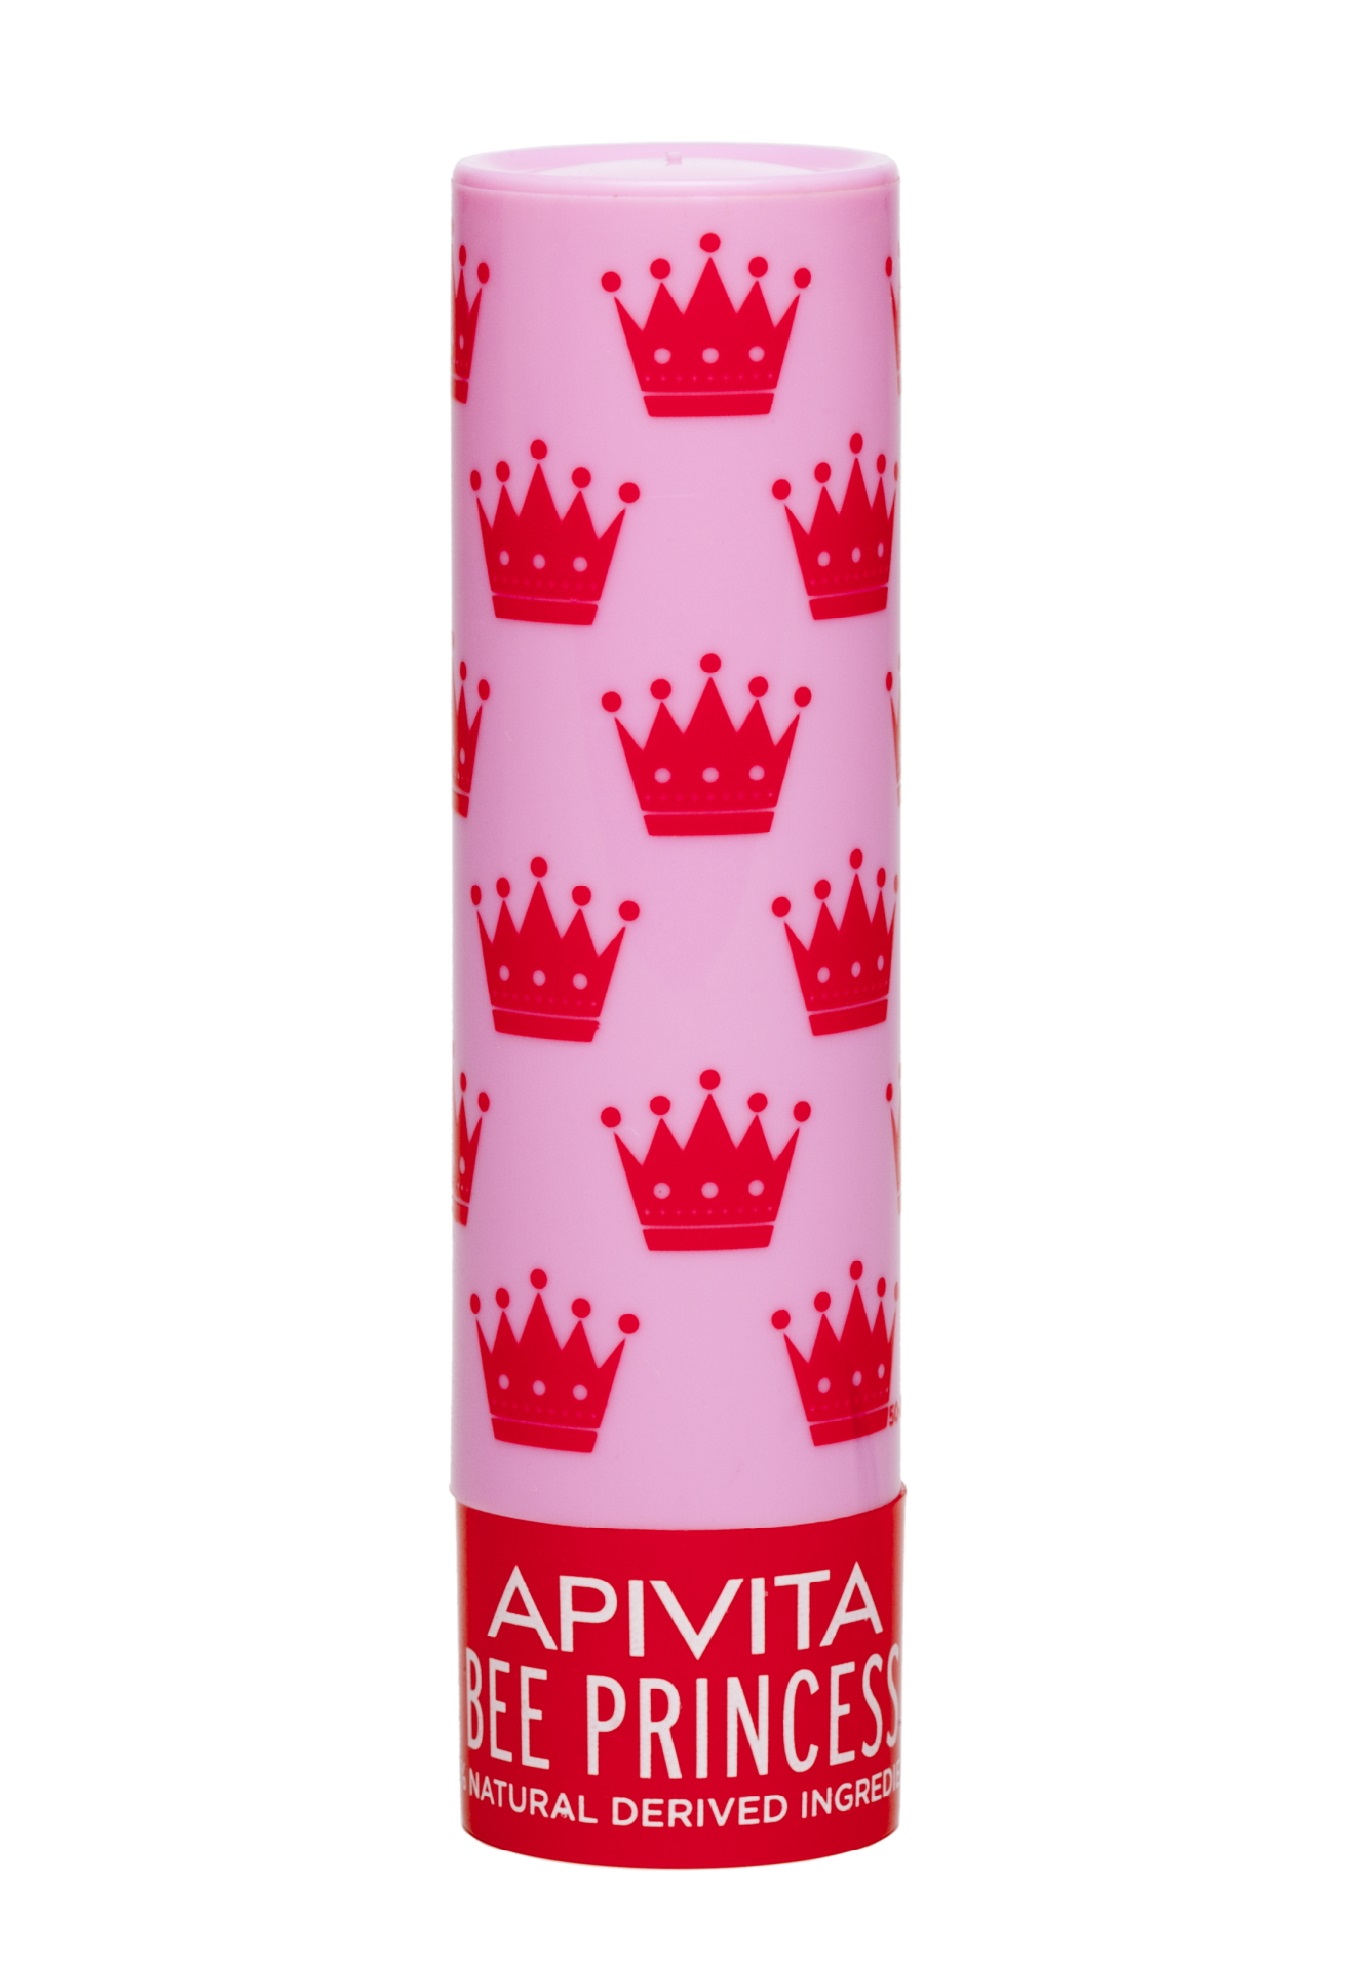 Apivita Уход для губ Принцесса Пчела Био, 4,4 г (Apivita, Lip Care)